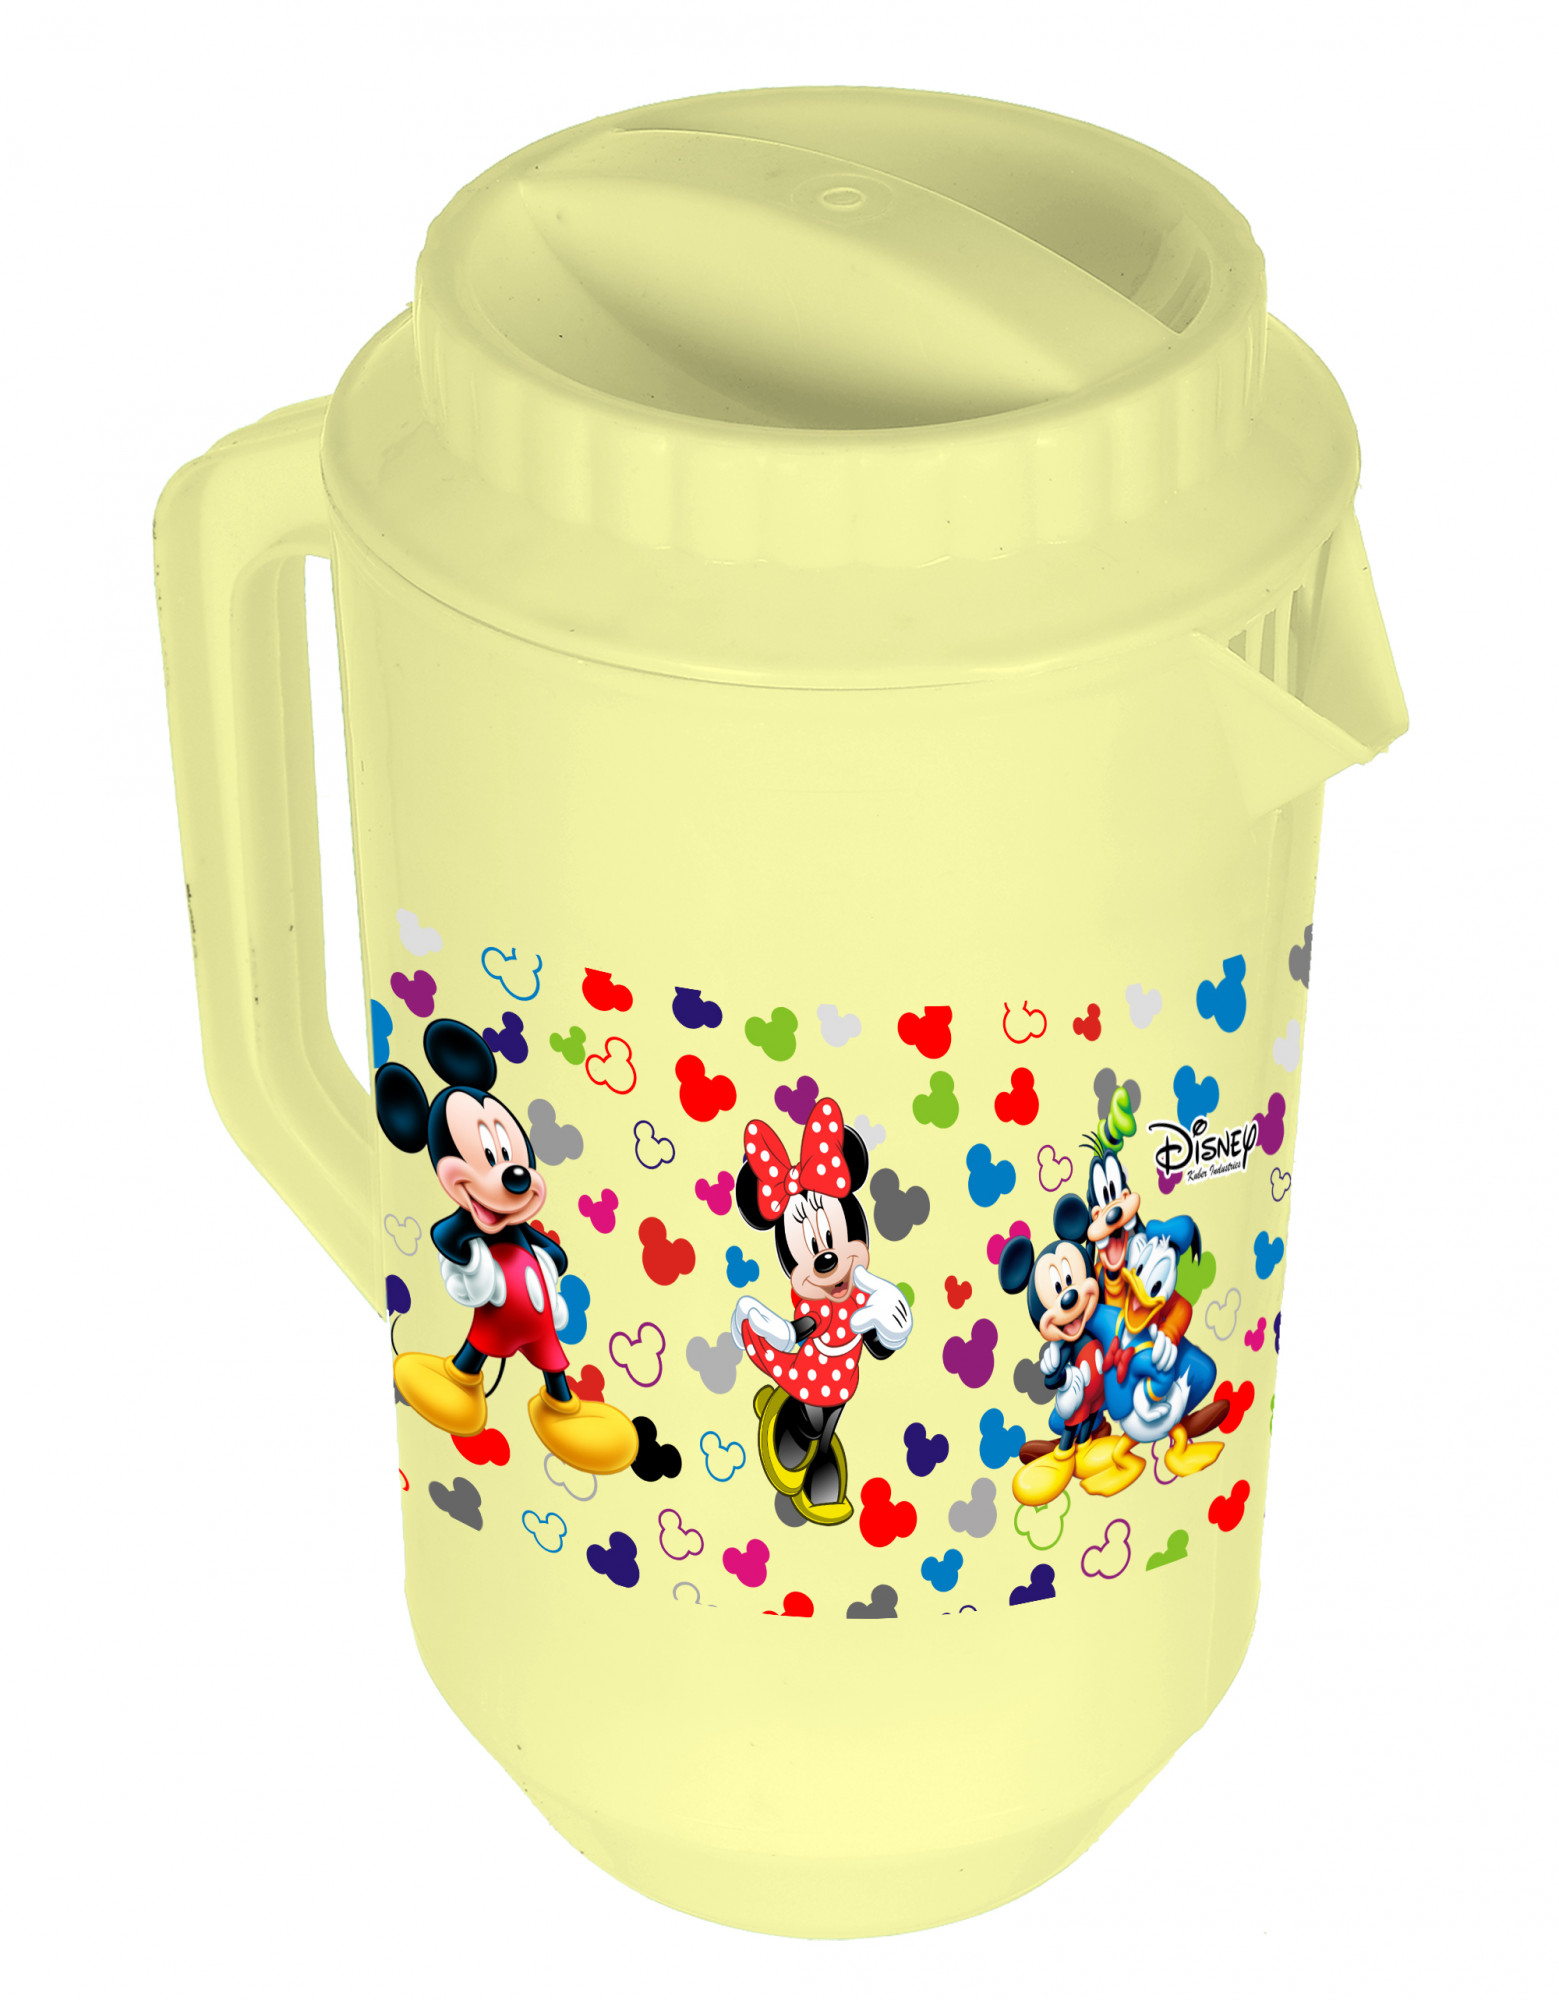 Kuber Industries Disney Team Mickey Print Unbreakable Multipurpose Plastic Water & Juice Jug With Lid,2 Ltr (Set Of 2, Cream & White)